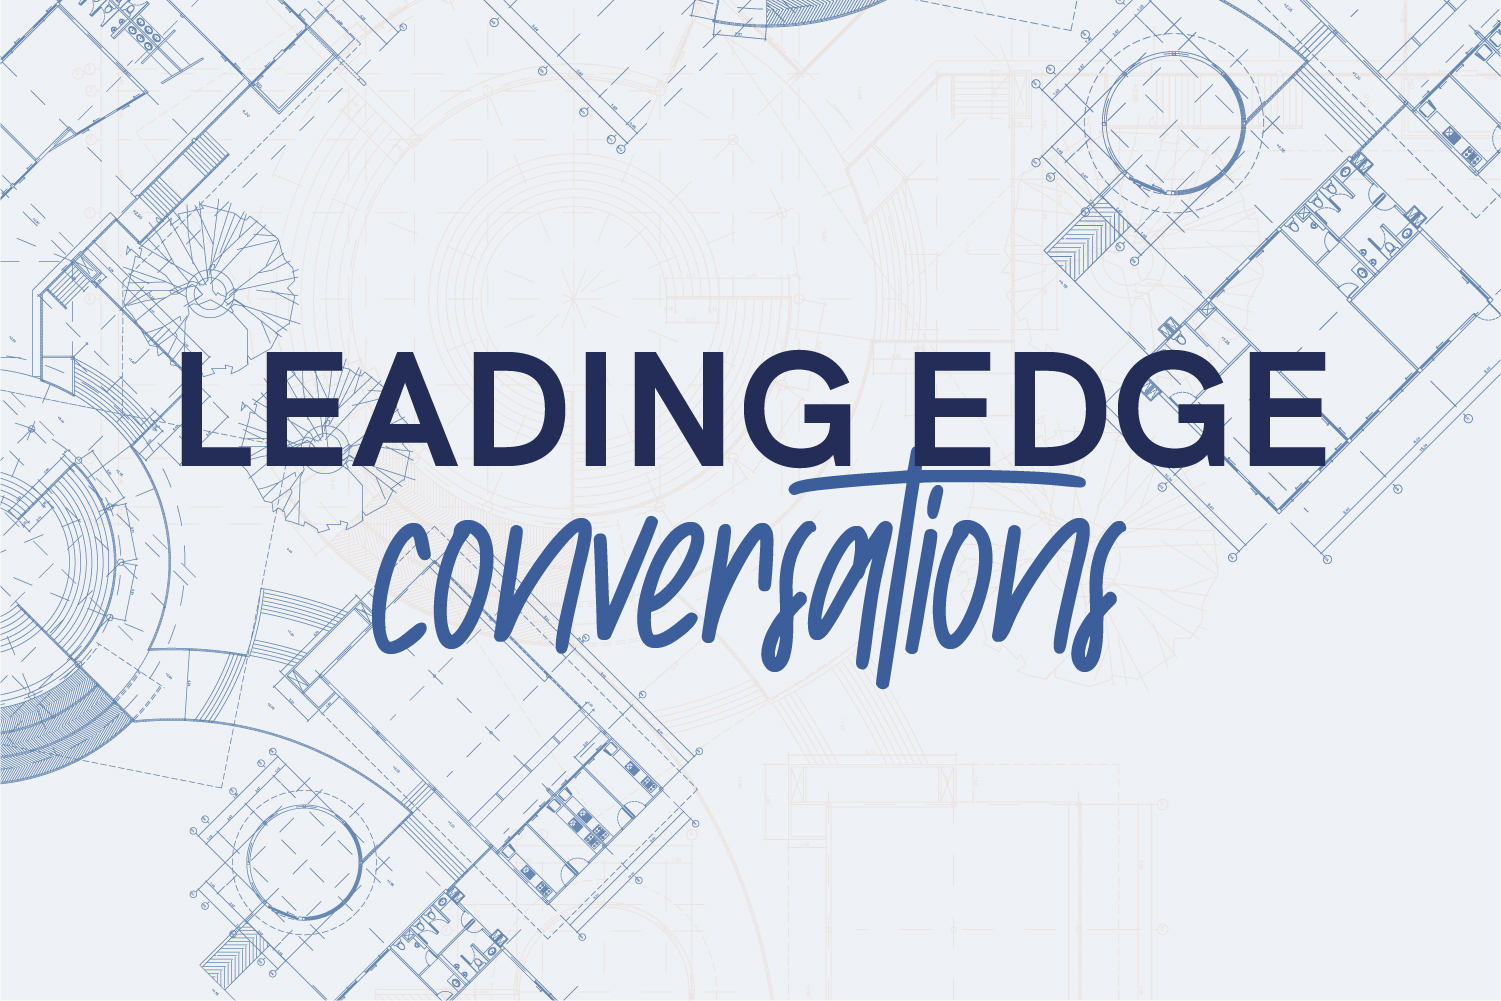 Leading edge conversations with Graziadio